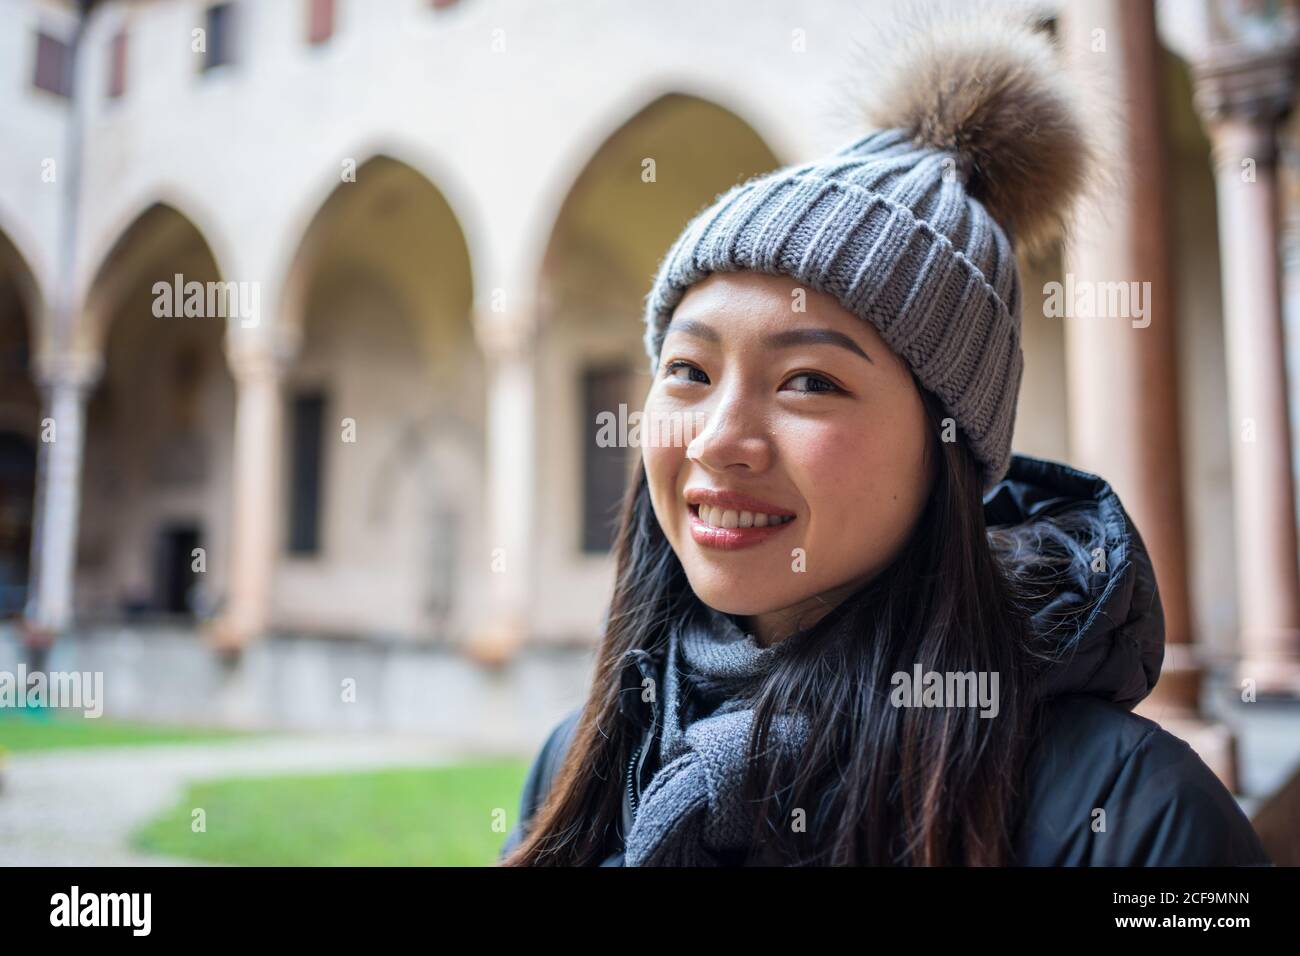 Neugierige, ruhende asiatische Frau in warmer Kleidung und Hut, die die wunderschöne antike Basilica di Sant Antonio di Padova mit Blick auf die Kamera erkundet Stockfoto